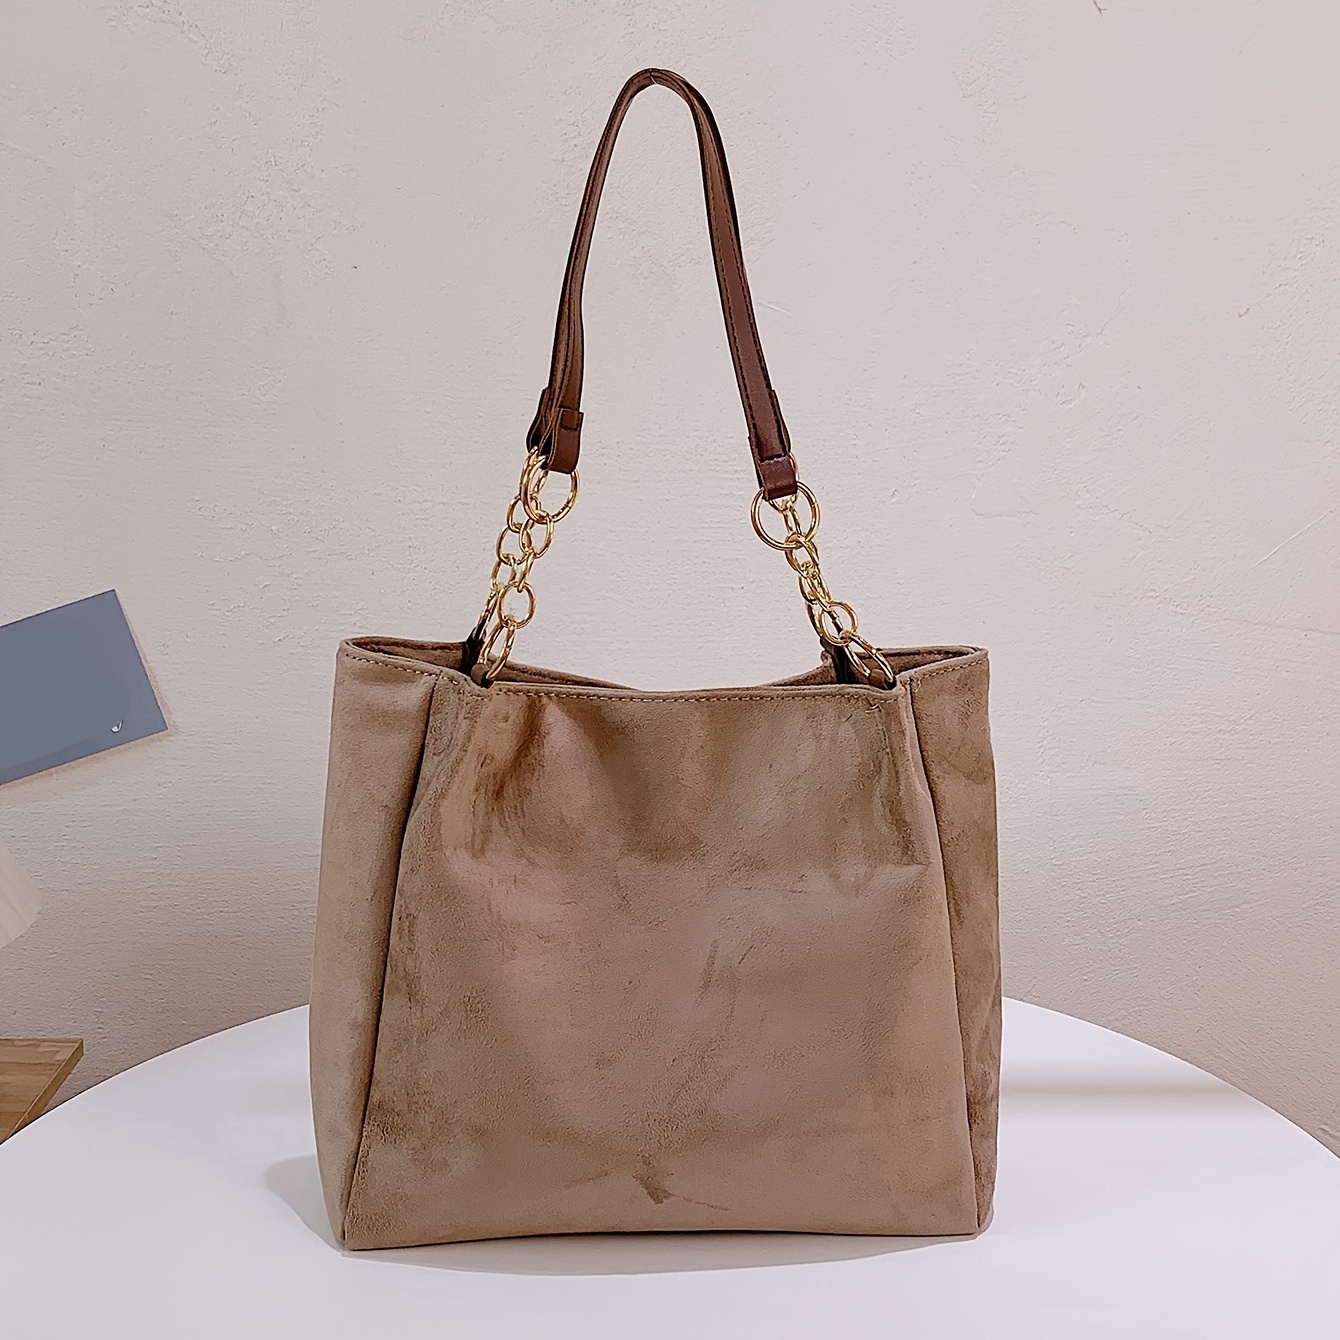 Segater Women's Multicolor Tote Handbag Genuine Leather Color Matching Design Hobo Crossbody Shoulder Bag Purses